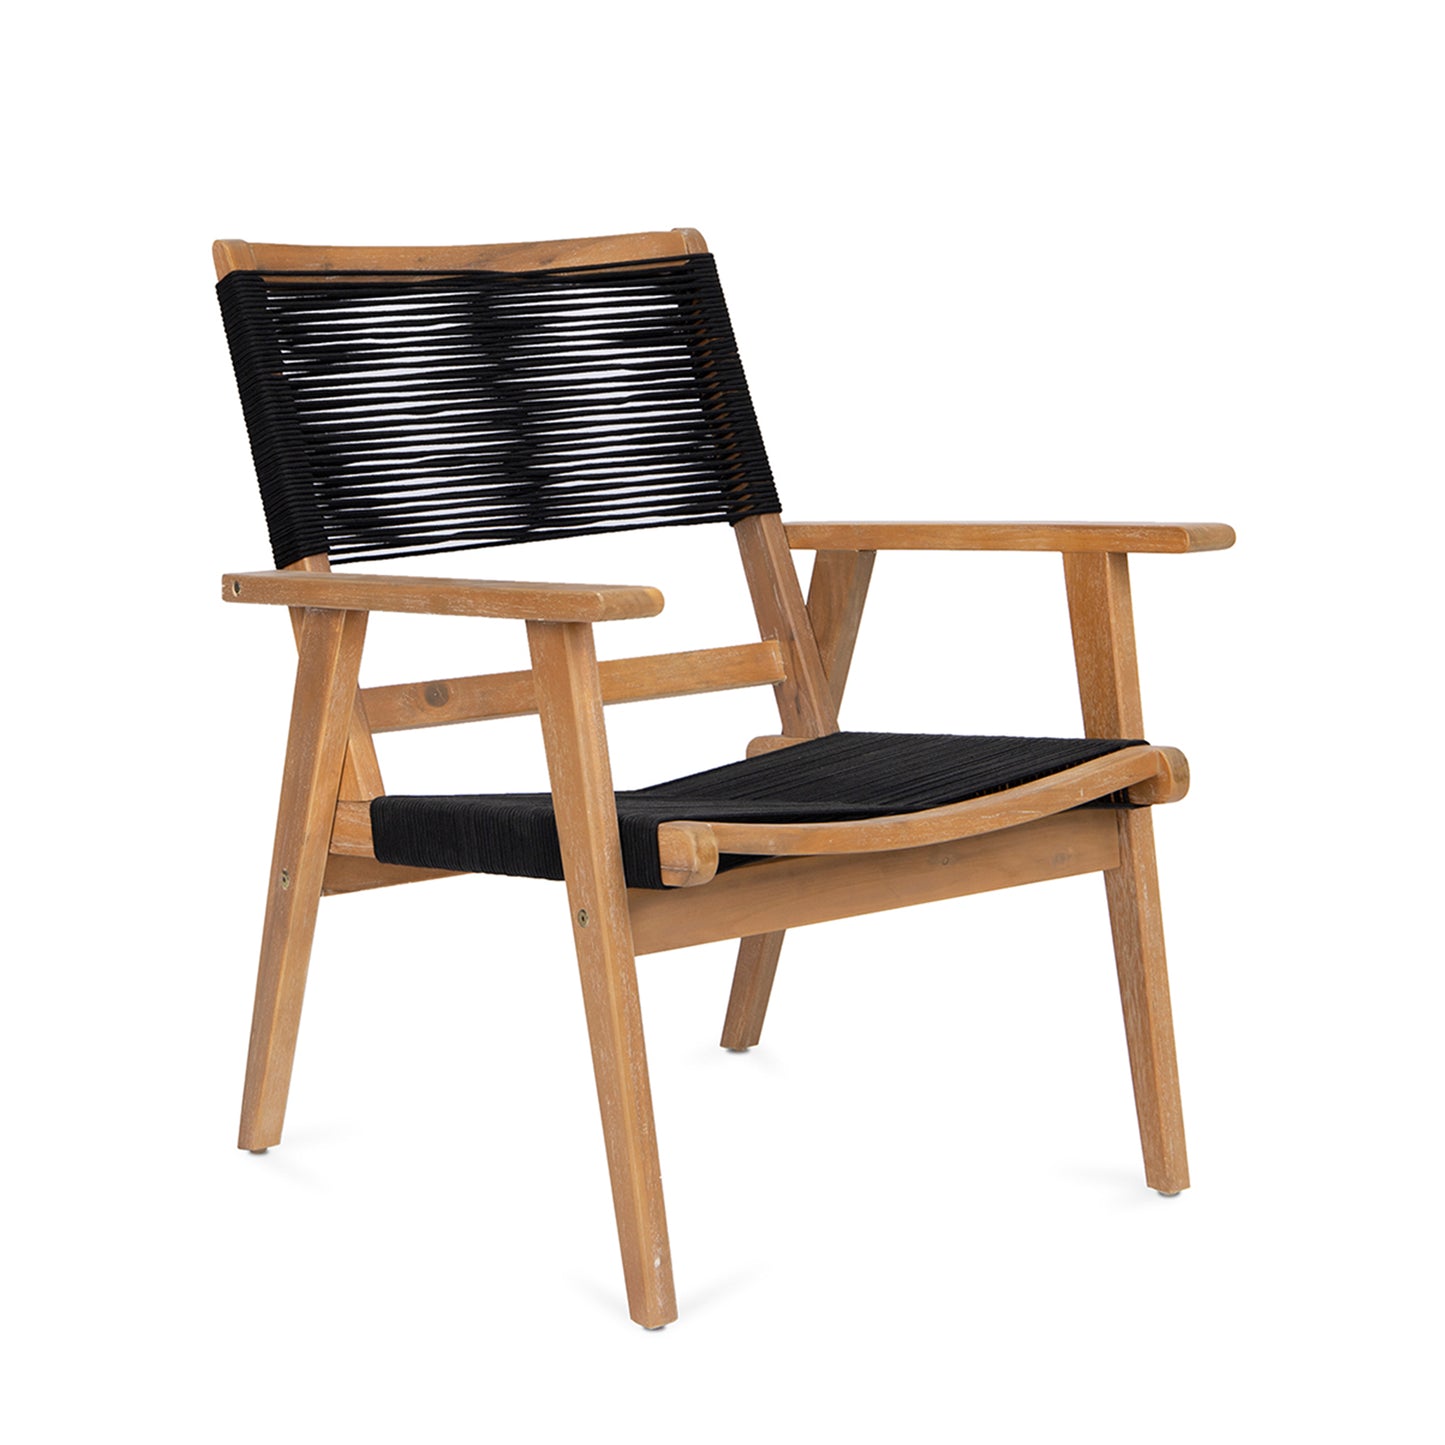 Chaise de meubles de Patio, en corde noire, pour 2 personnes, sectionnelle de conversation en plein air, pour jardin, bord de piscine, jardin